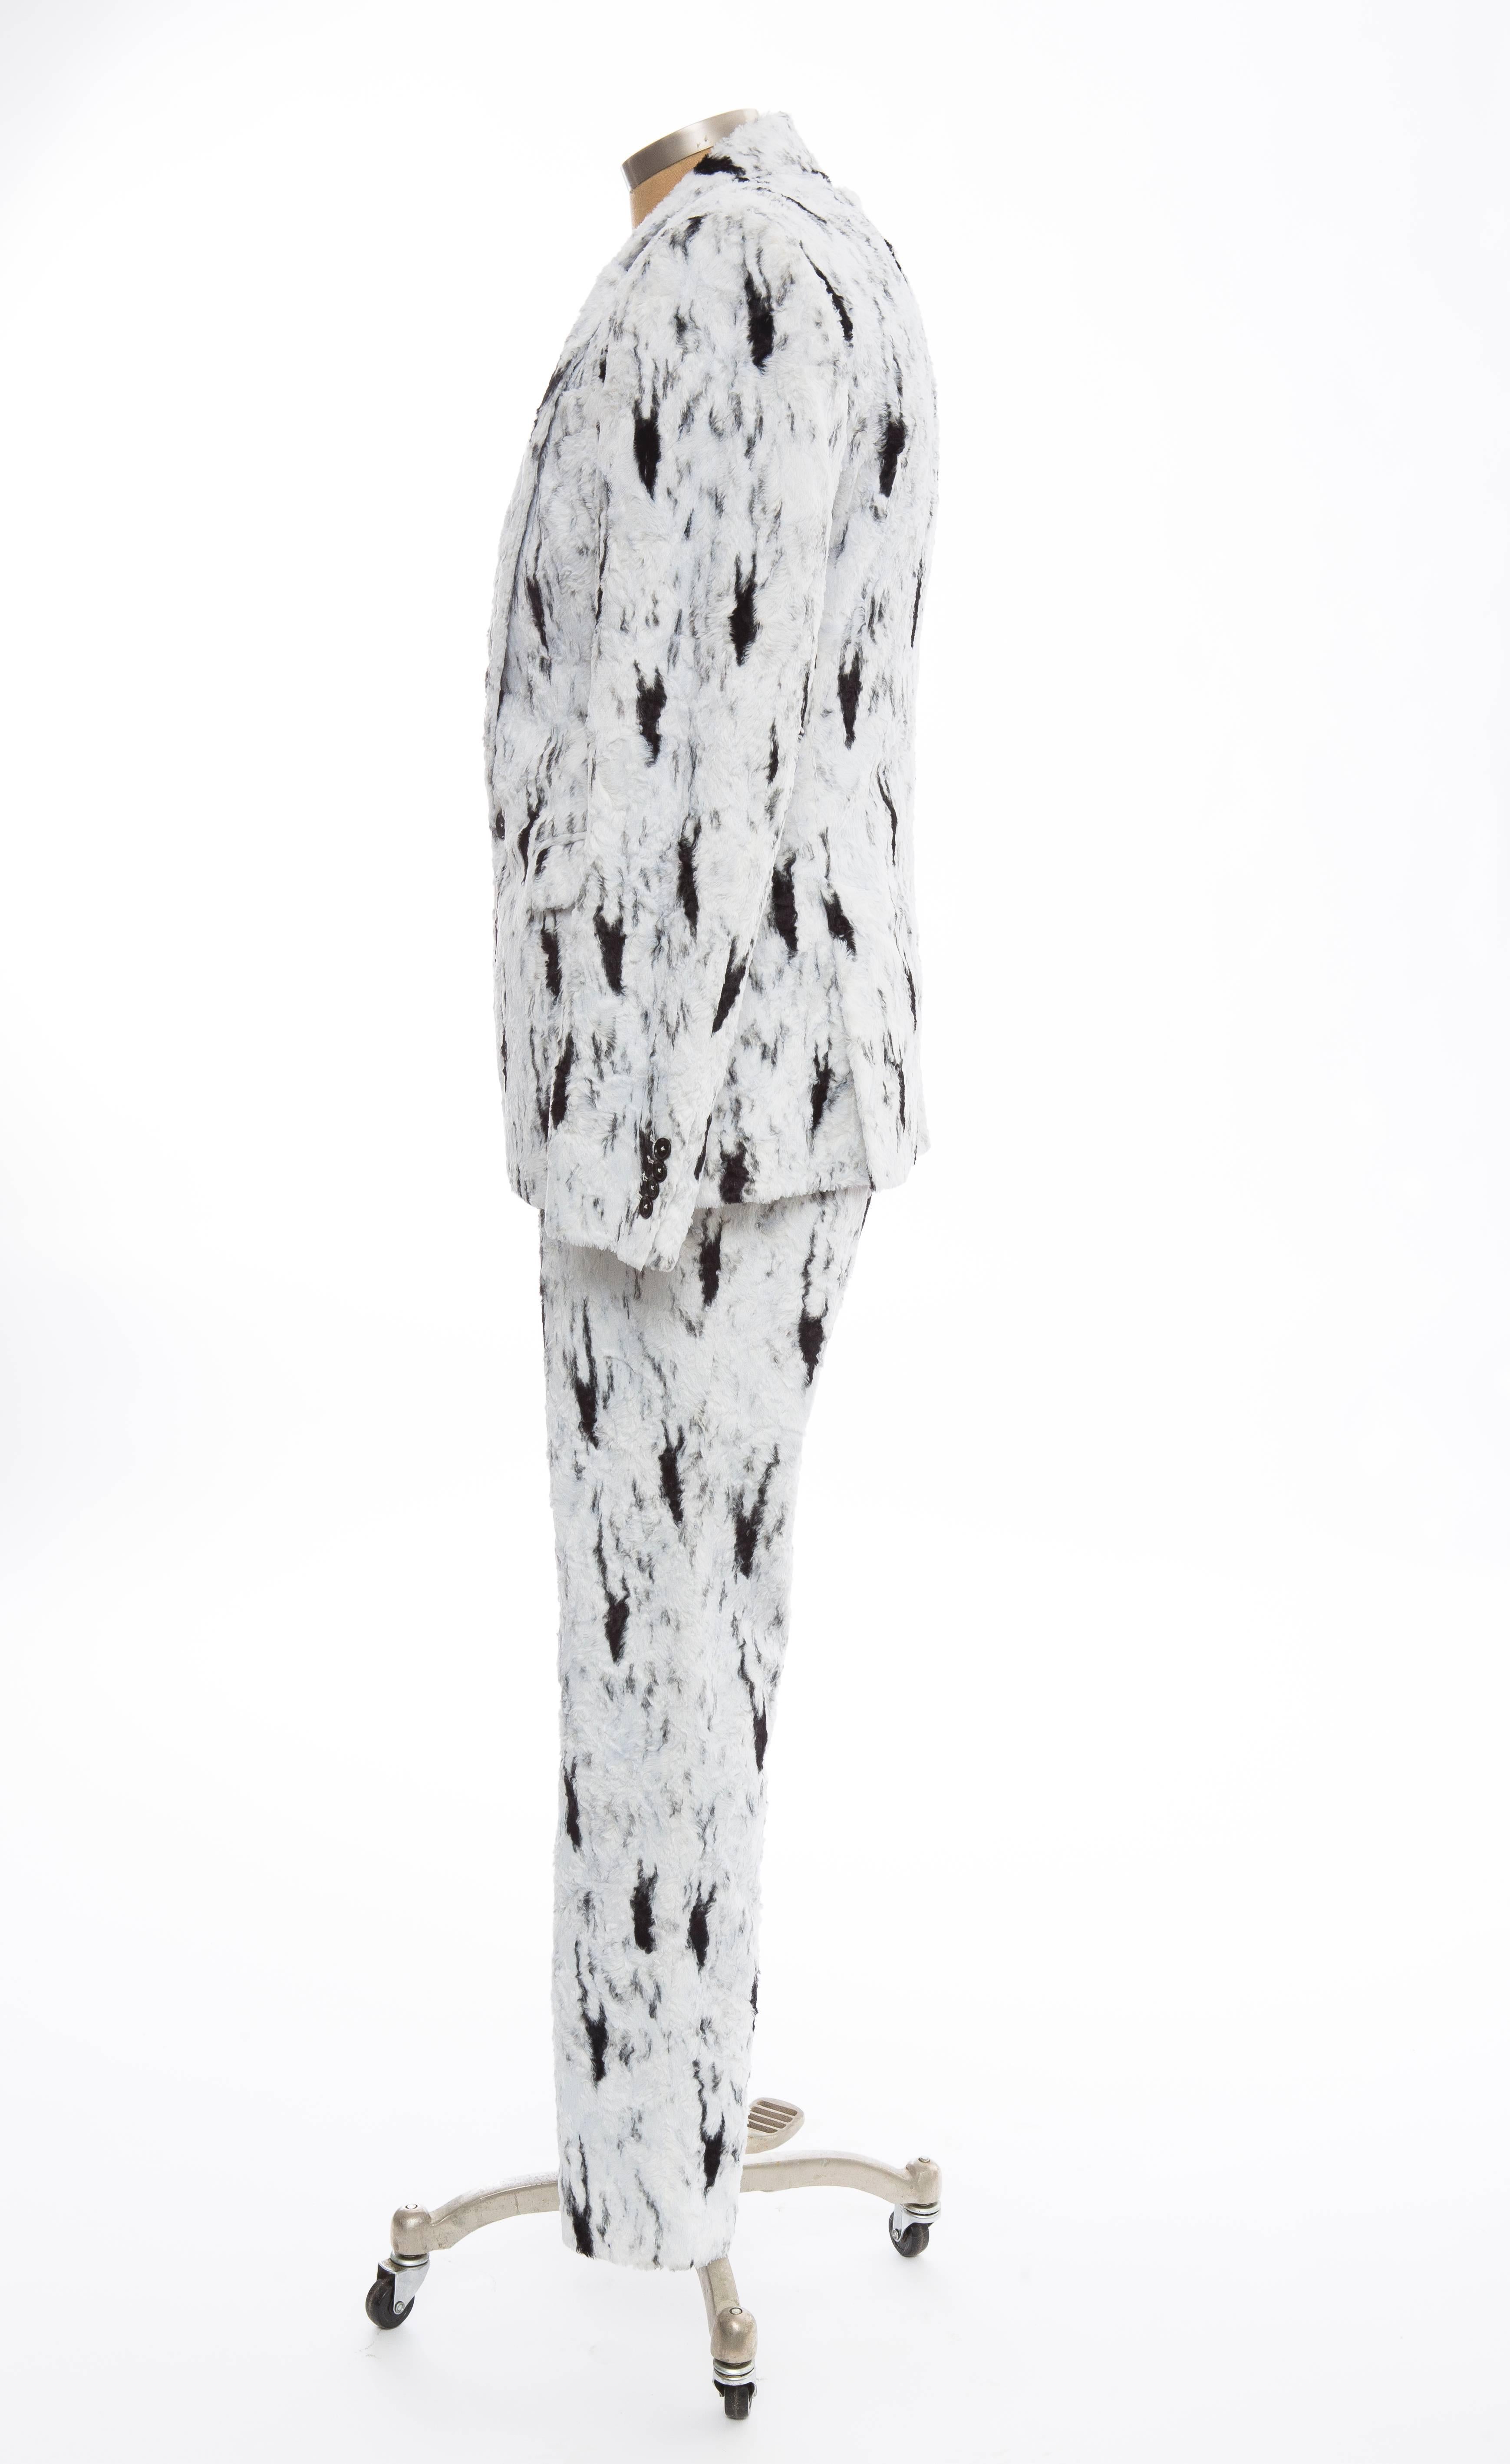 Jeremy Scott für Moschino Couture Laufsteg Herbst-Winter 2015, zweiteiliger Anzug. Jacke mit doppeltem Schlitz, drei Taschen und zwei Knöpfen auf der Vorderseite. Die Hose hat vier Taschen, einen Einsatz mit Lasche und einen Reißverschluss auf der